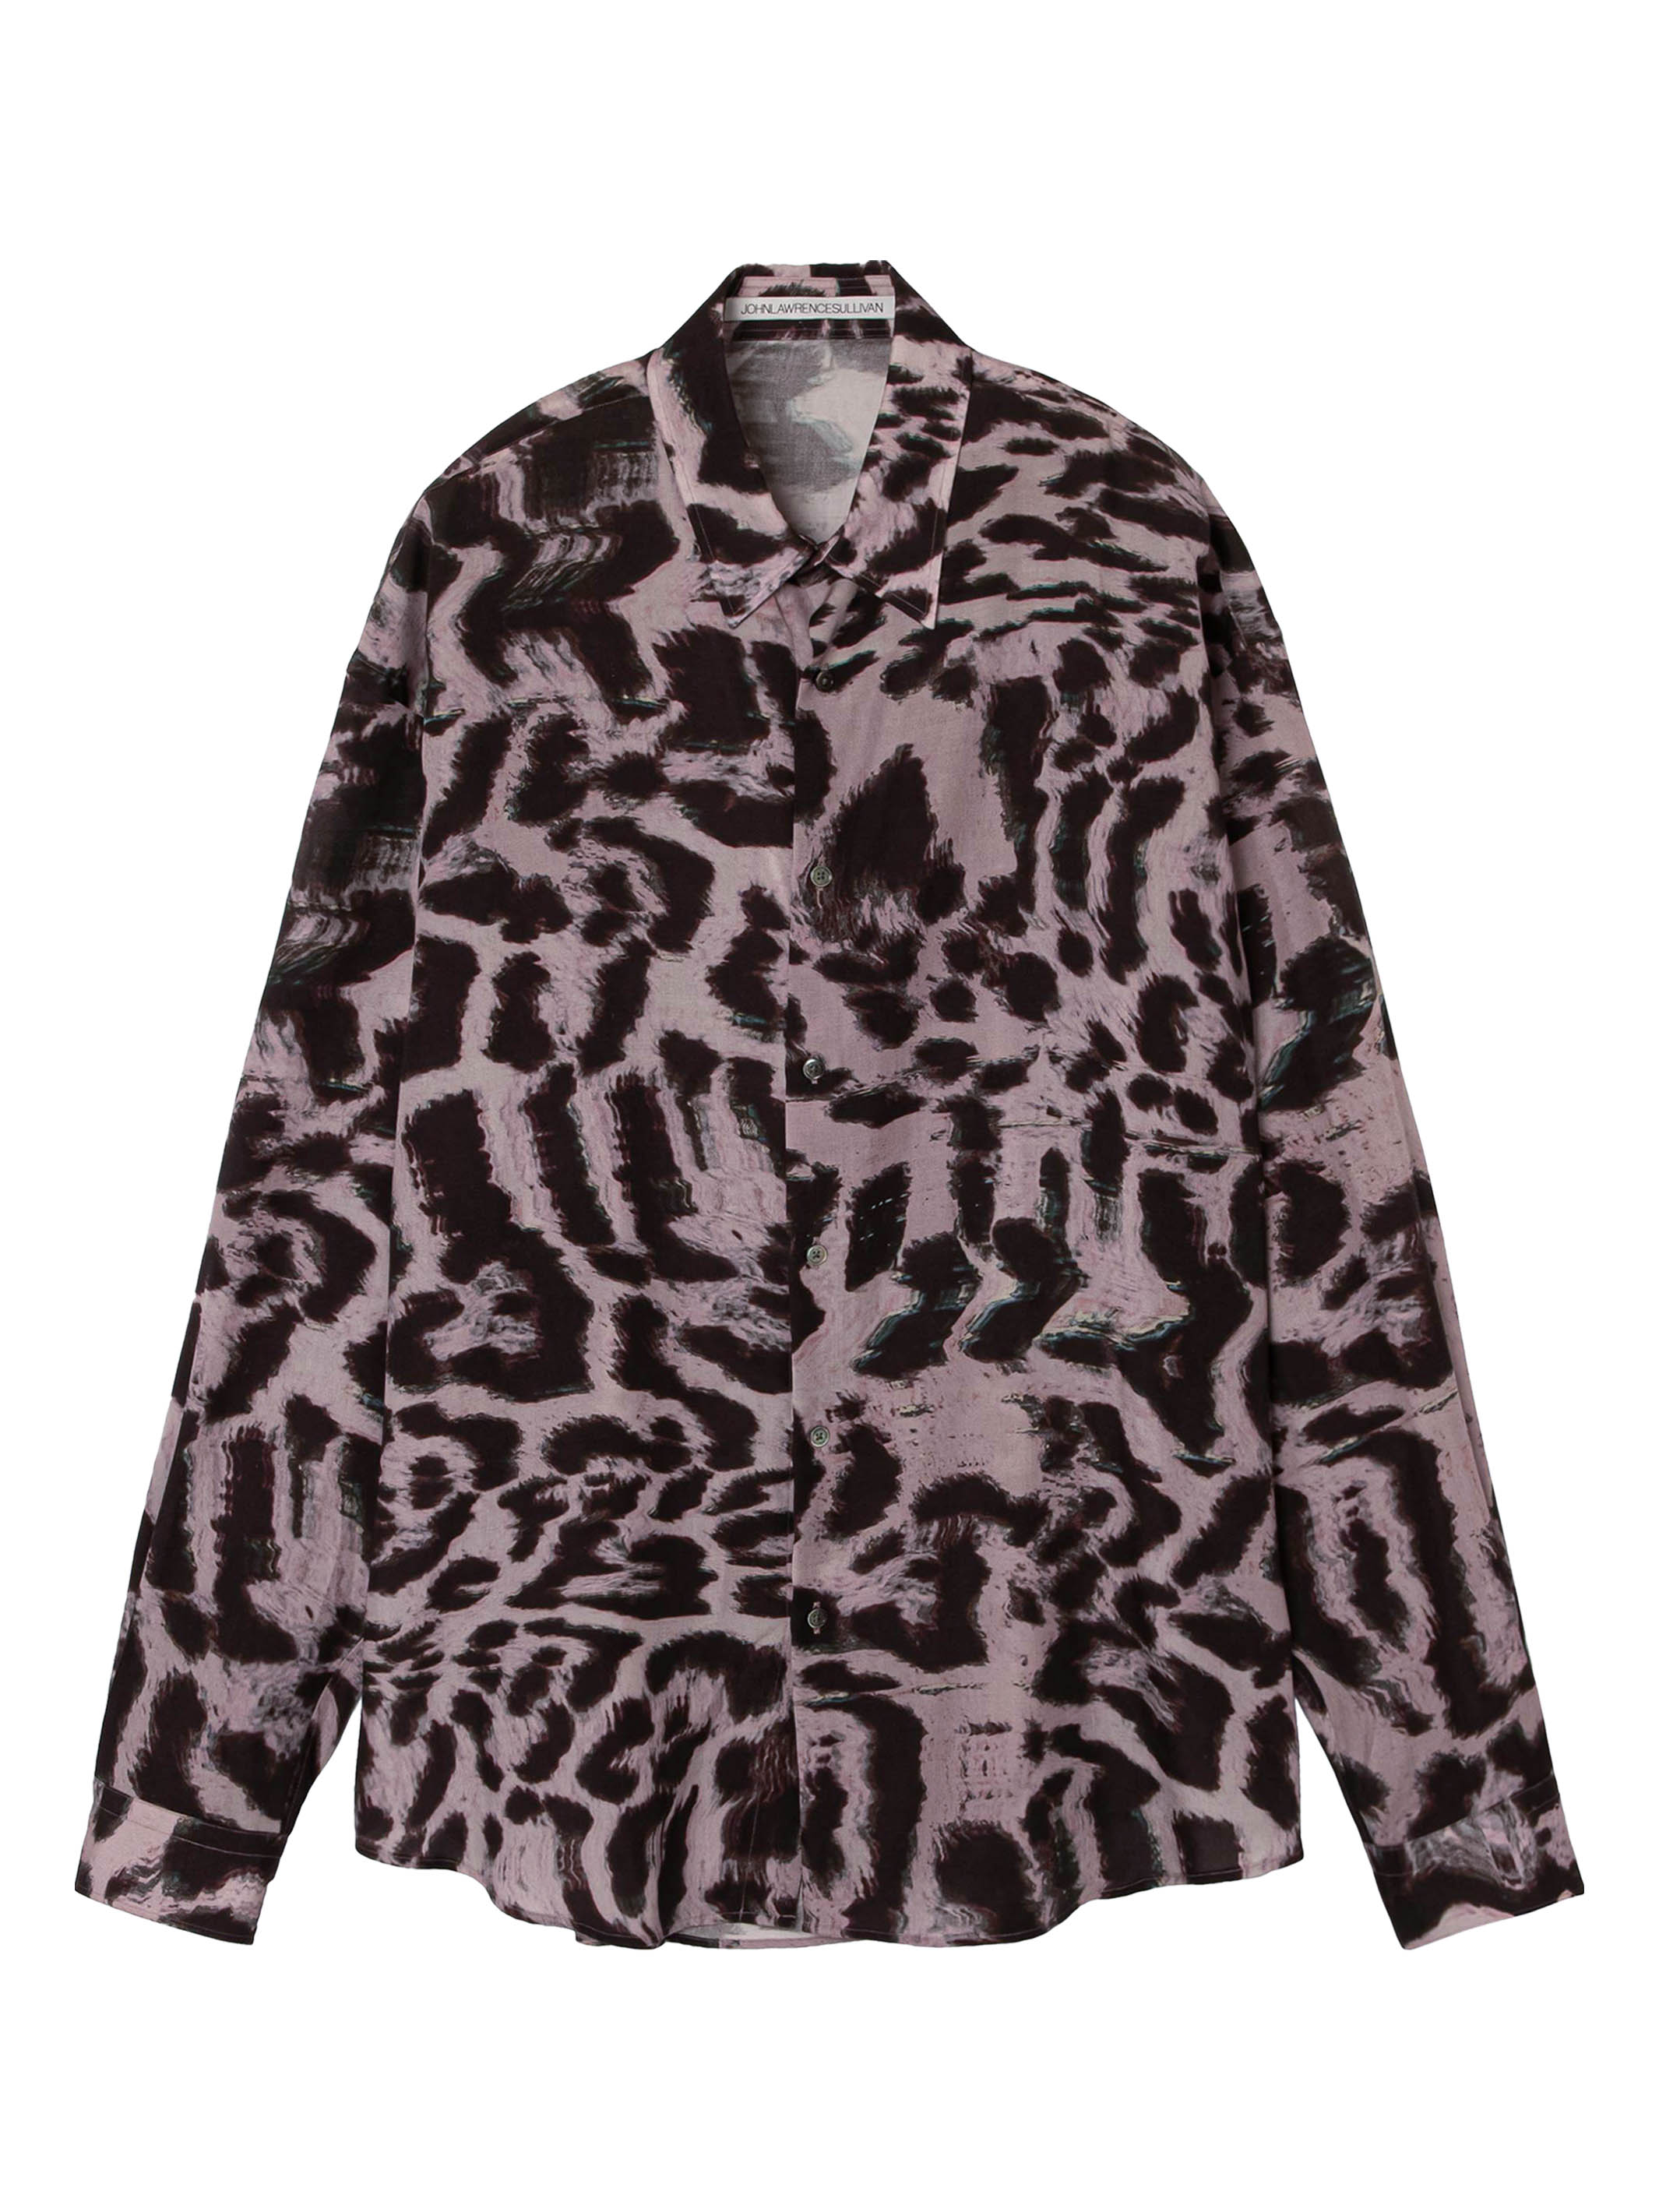 Leopard print regular collar shirt